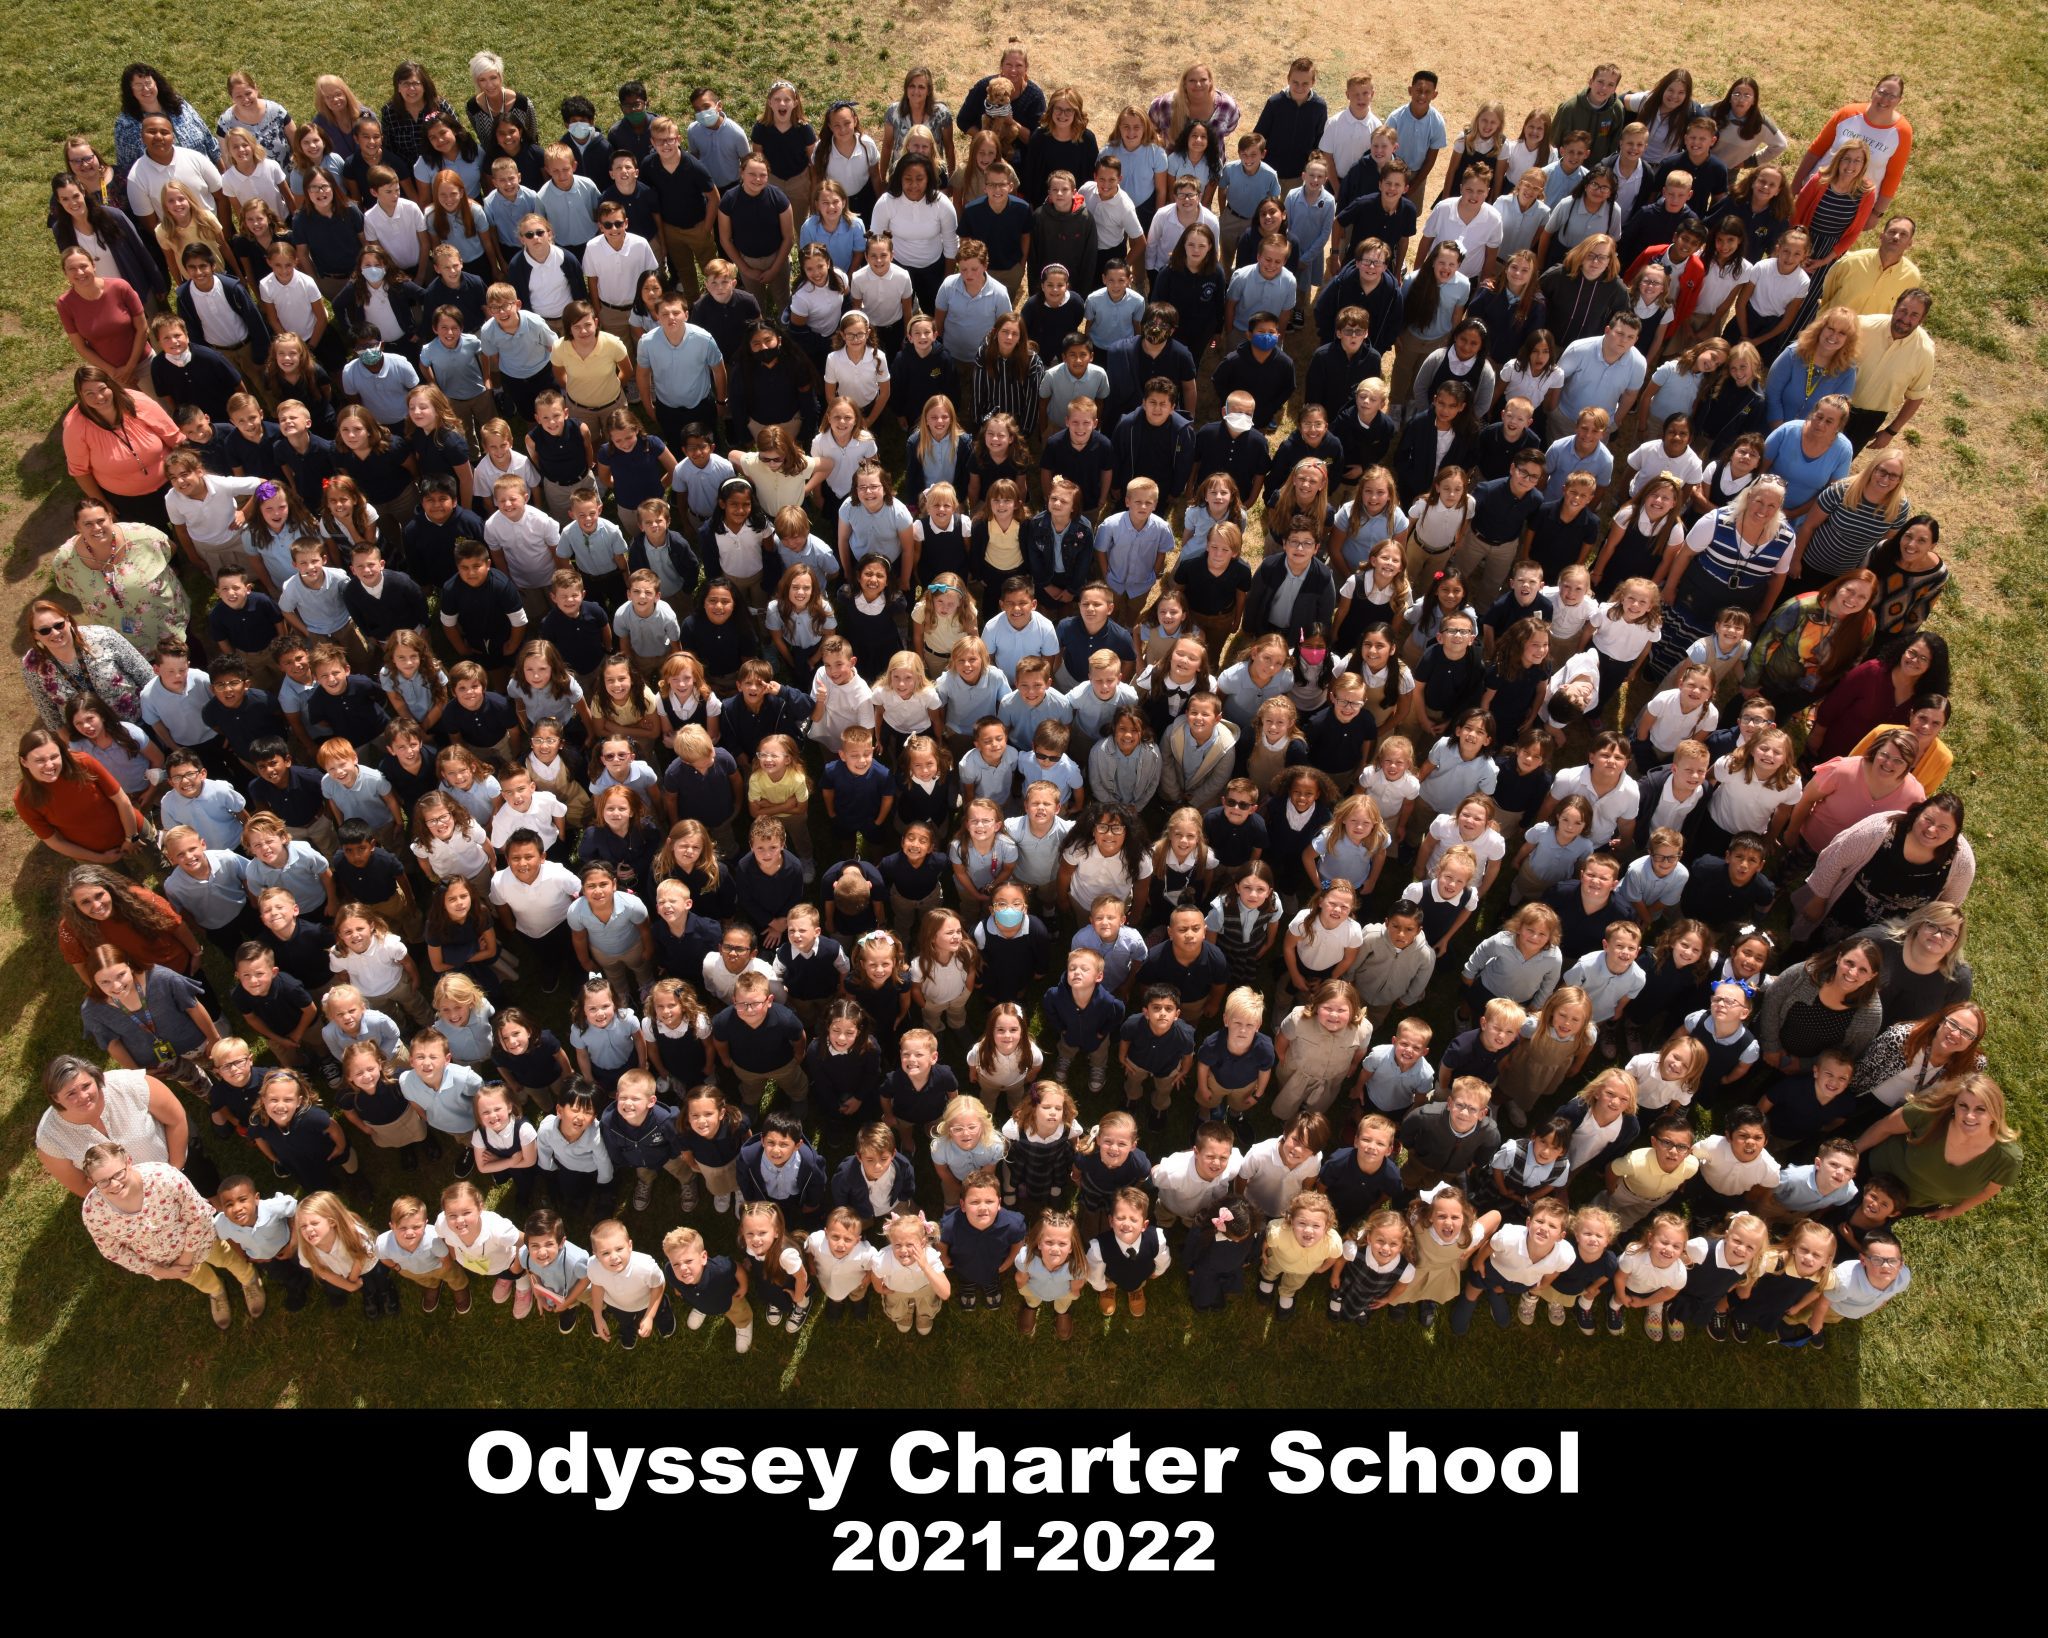 Odyssey Charter School 16x20 2 2048x1638 